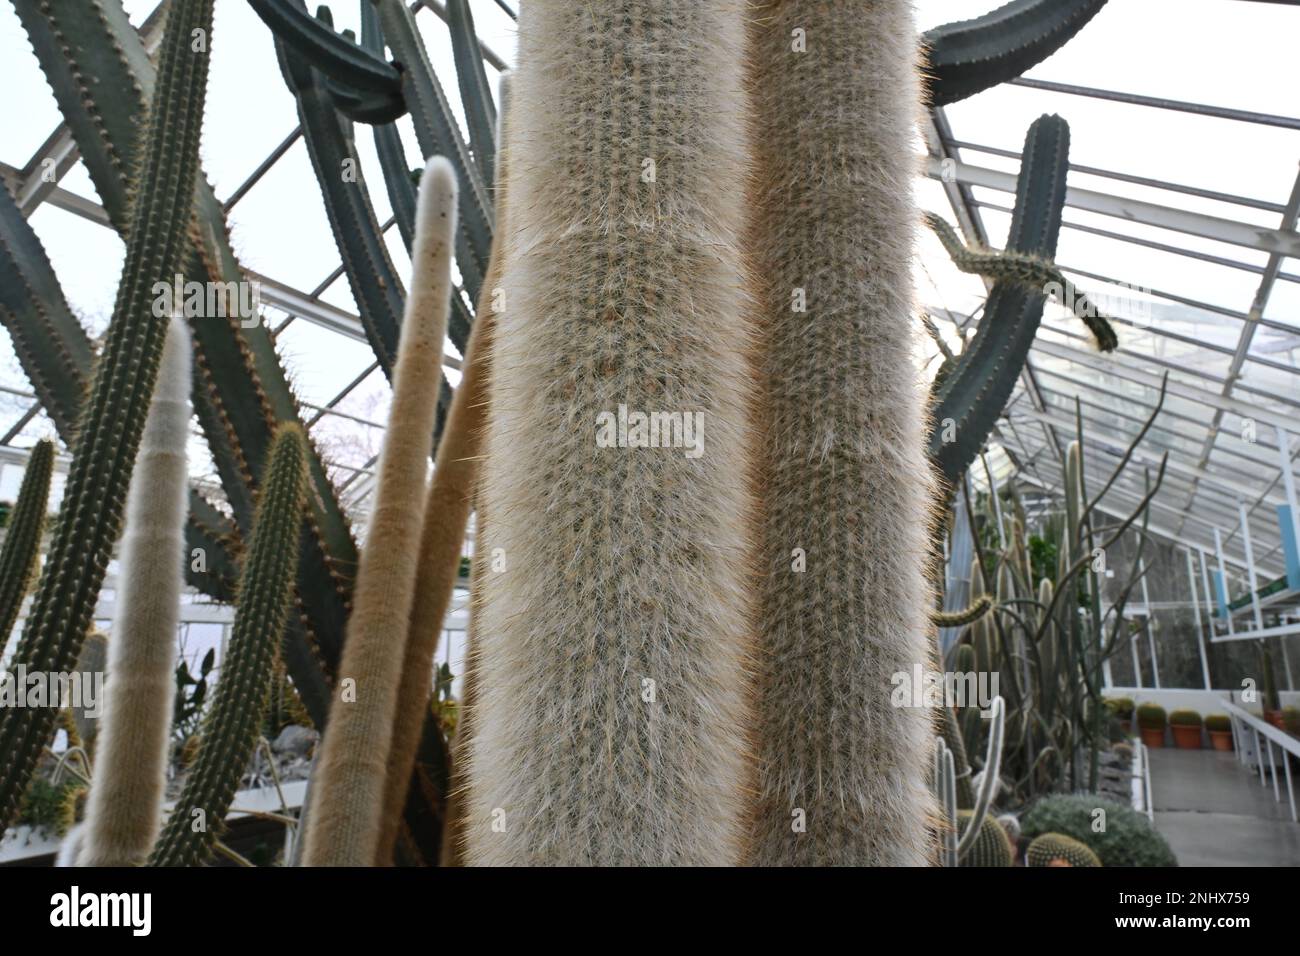 Due steli di cannello d'argento o cannello lanoso cactus, in latino chiamato cleistocactus strausii. Taglio da una serra piena di cactus e piante succulente Foto Stock